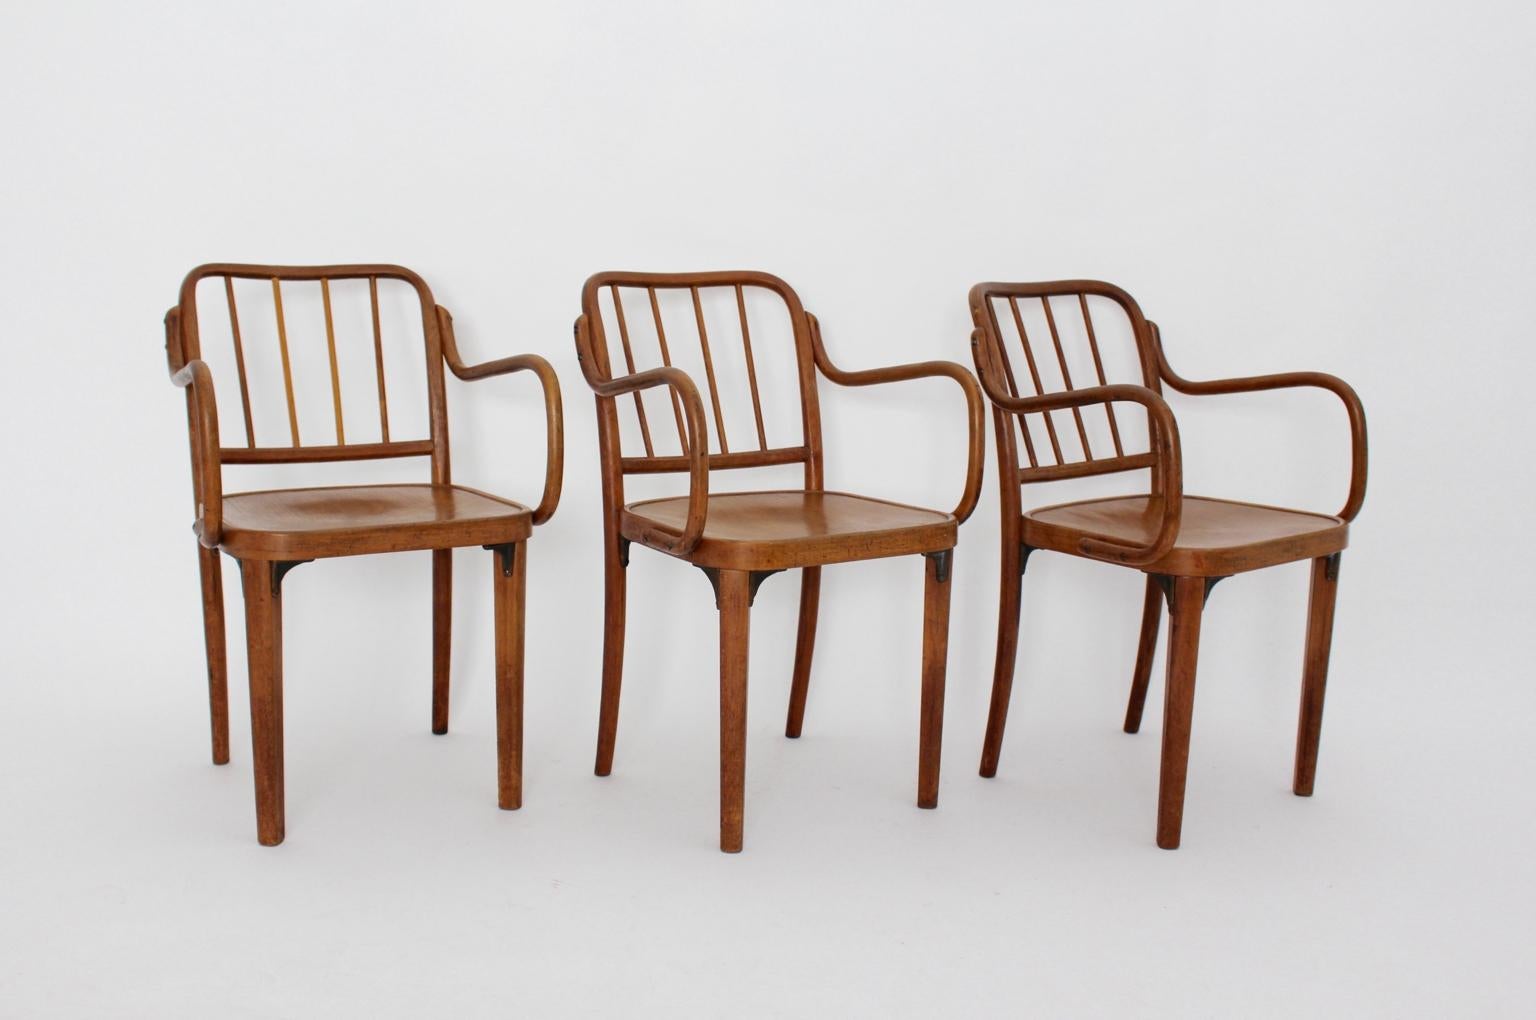 Art Deco drei Sessel aus Eiche und Sperrholz von Josef Frank, zugeschrieben und ausgeführt von Thonet Wien, 1930er Jahre.
Das Gestell der Stühle ist aus Eichenholz, die Sitze aus Sperrholz, verbunden mit Gusselementen.
Lackiert und in gutem Zustand,